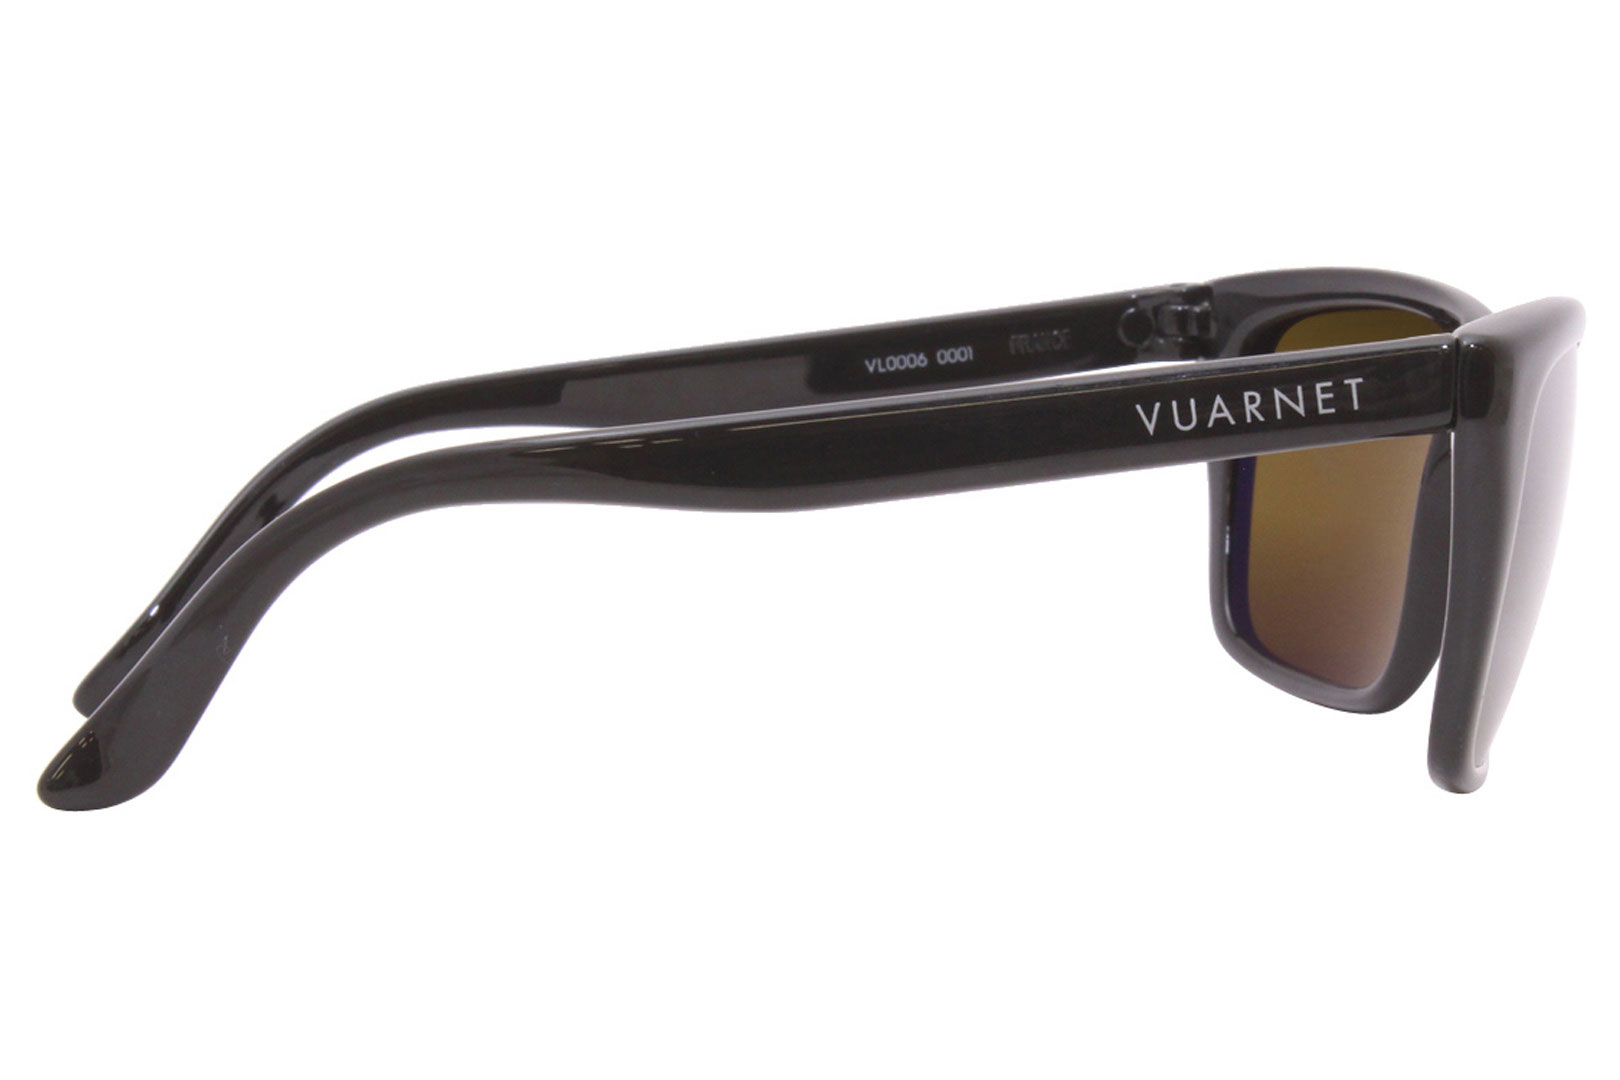 Vuarnet Sunglasses Men's Legend VL0006 0001 Black/Skilynx Lenses 58-16 ...